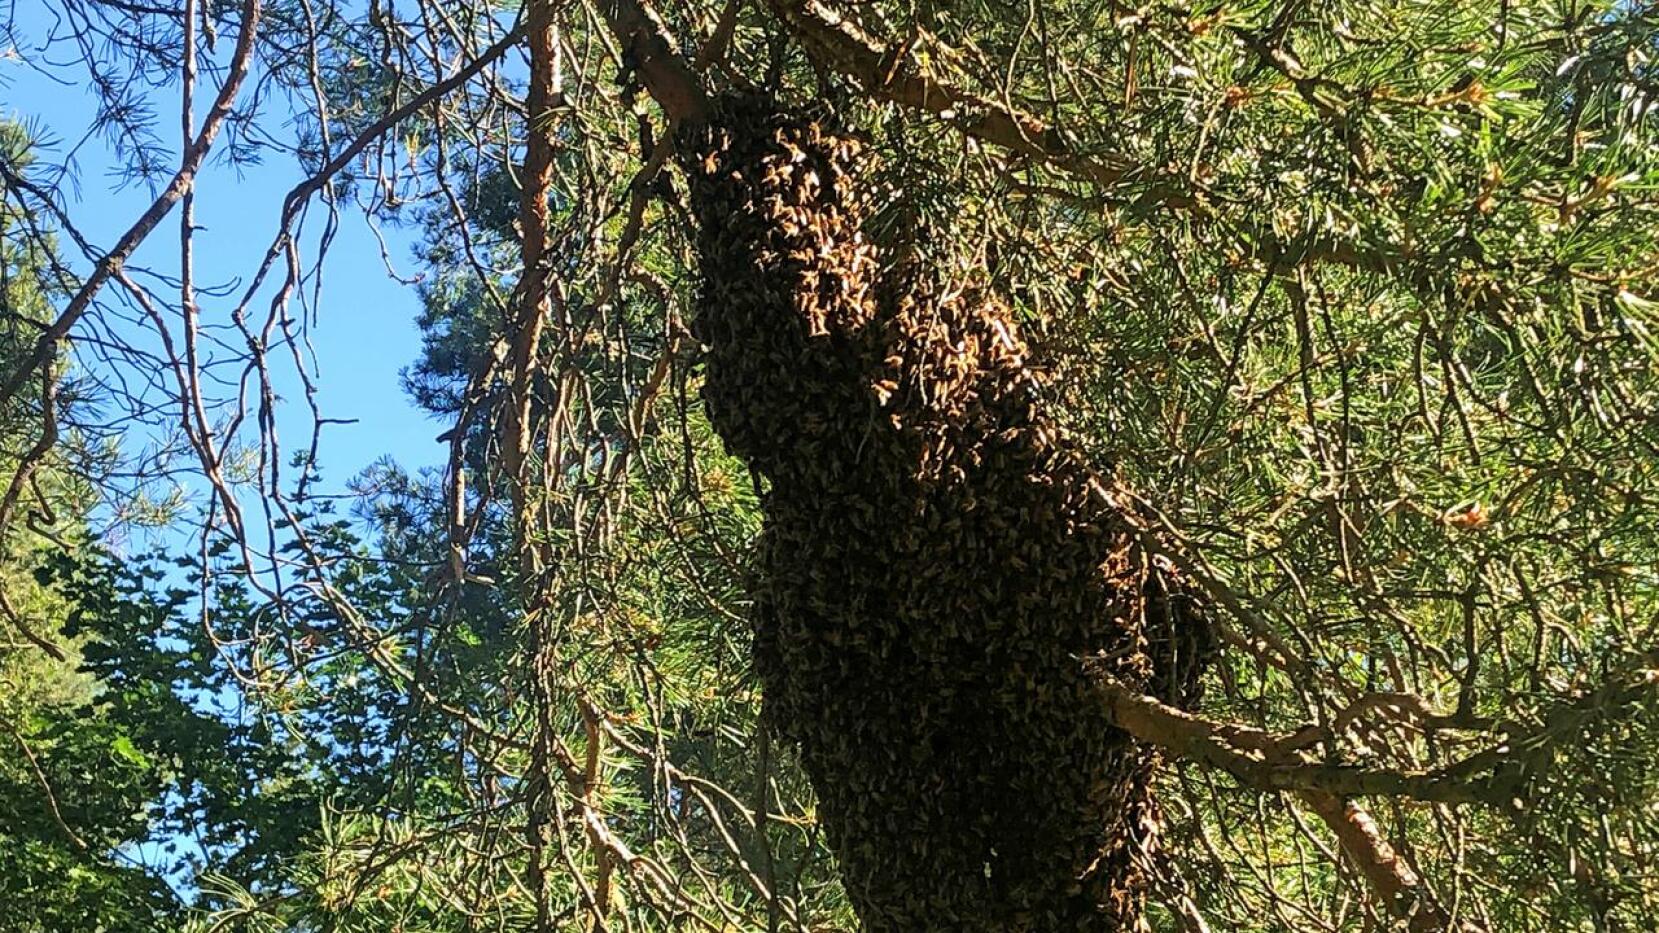 Mehiläistarhan pesästä on karannut puolet porukasta. Parvi parkkeerasi Ylivieskassa mäntyyn siksi aikaa, kun tiedustelijamehiläiset etsivät uutta pesää. Jos tämä sakki päättää muuttaa savupiippuun ja tuottaa 30-40 kiloa hunajaa, niin ollaan vaikeuksissa. 